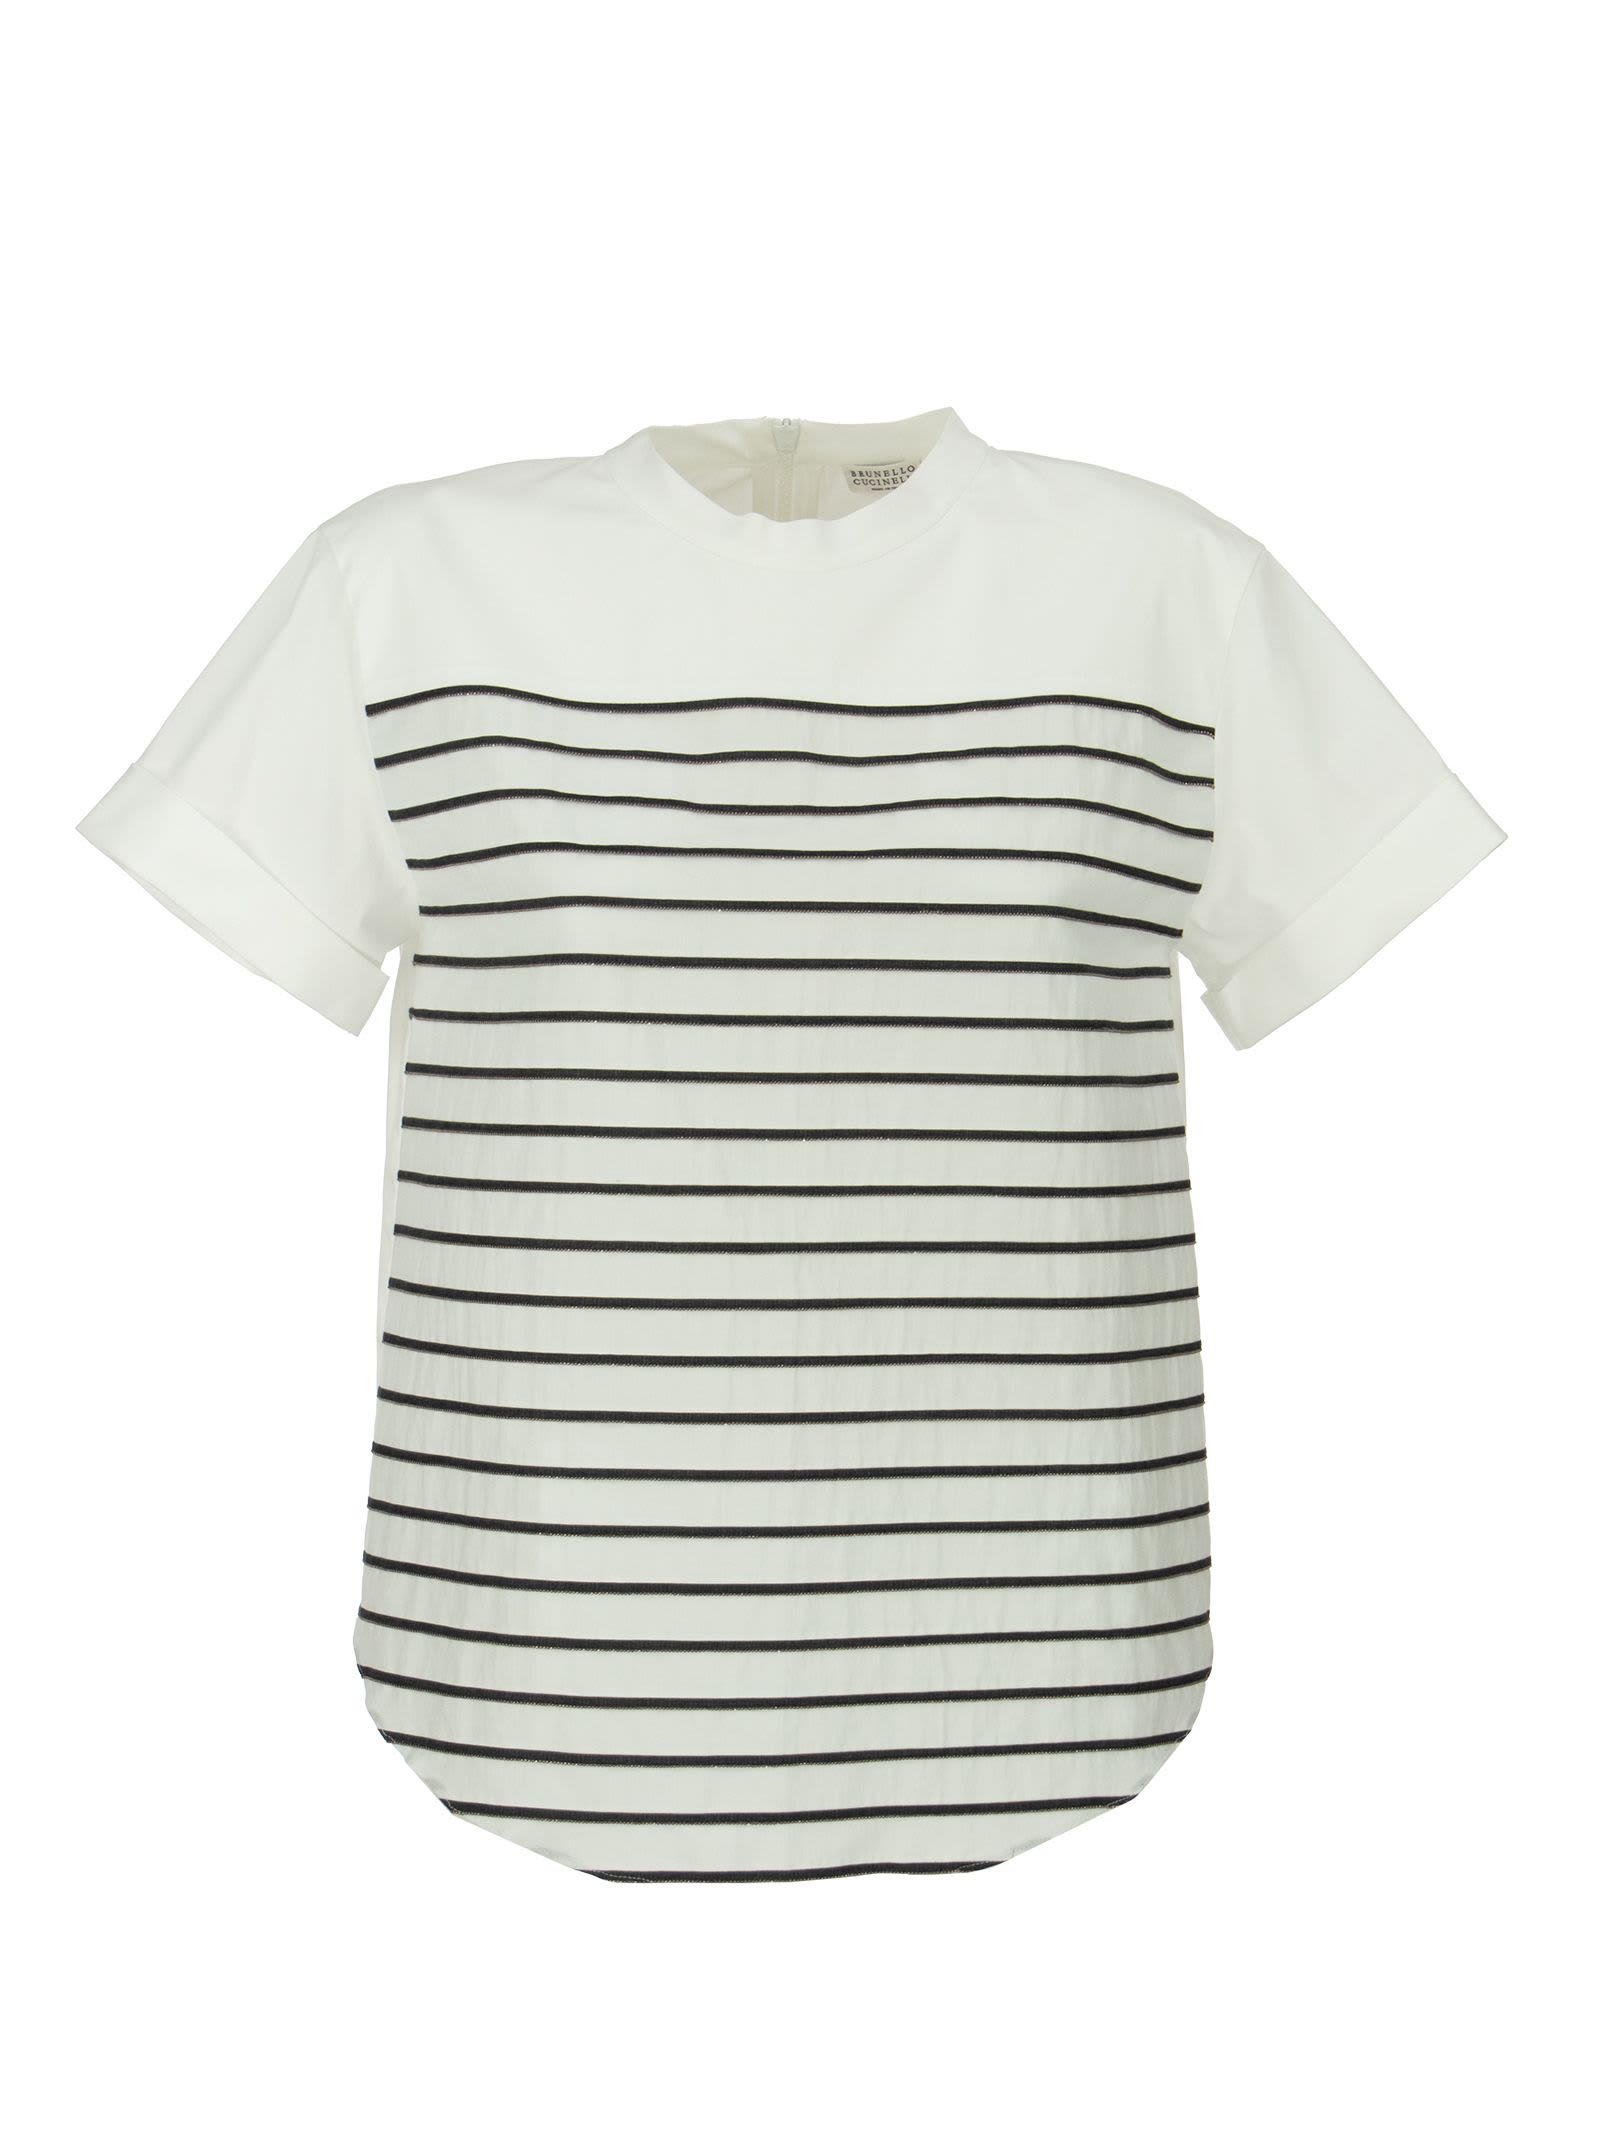 Stretch Cotton Poplin T-shirt With Shiny Stripes